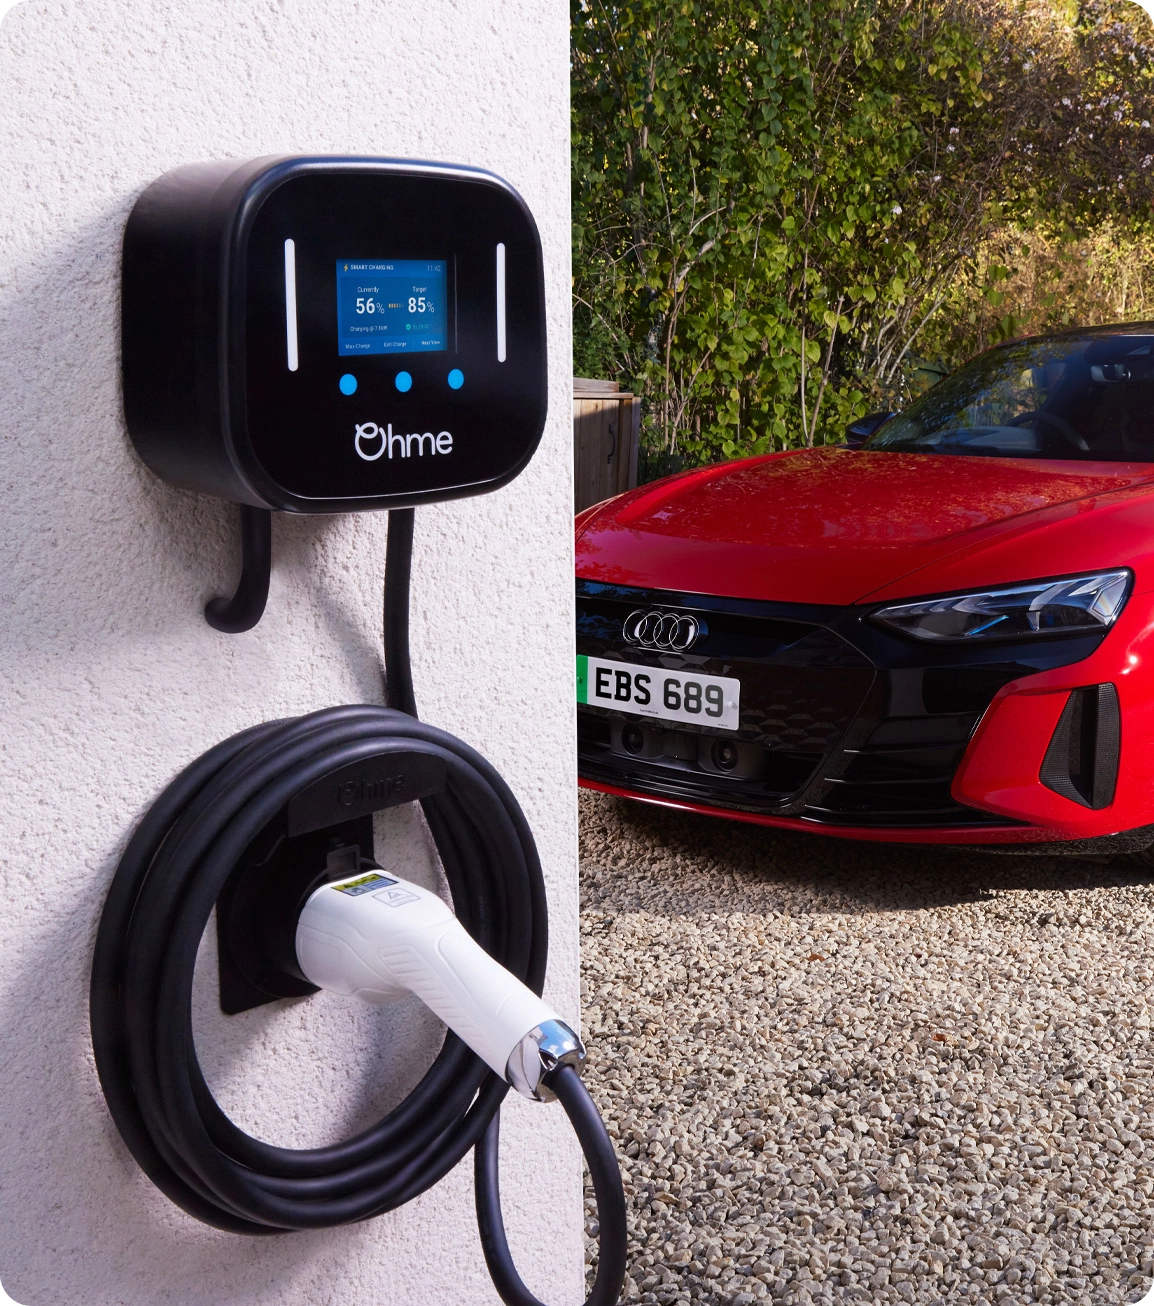 Borne de recharge Ohme (modèle disponible au Royaume-Uni uniquement) fixé au mur d'un client Audi